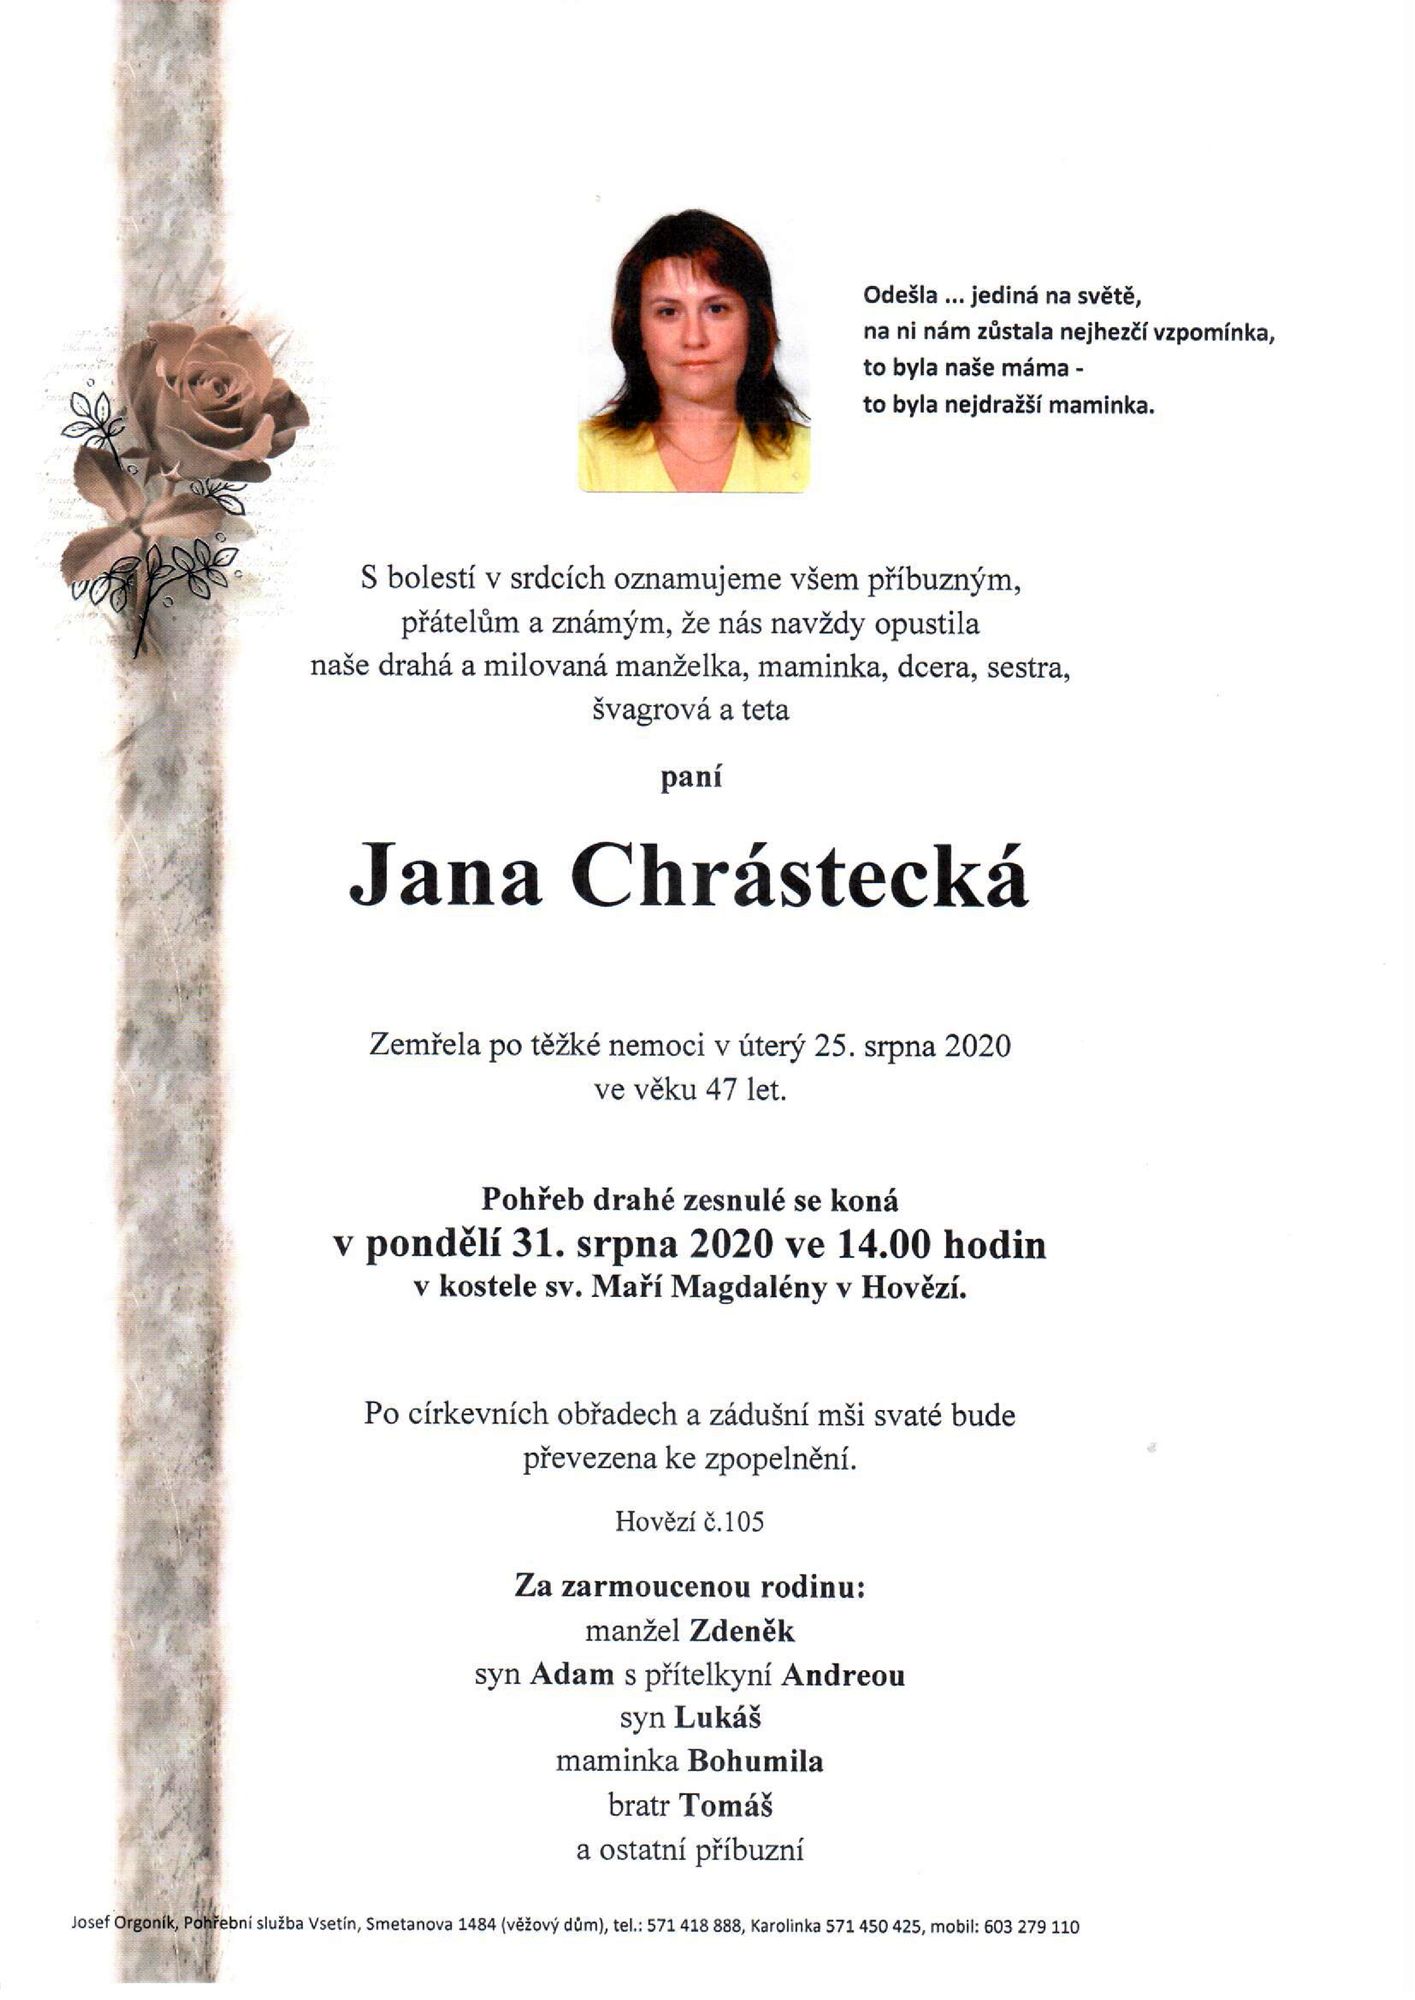 Jana Chrástecká